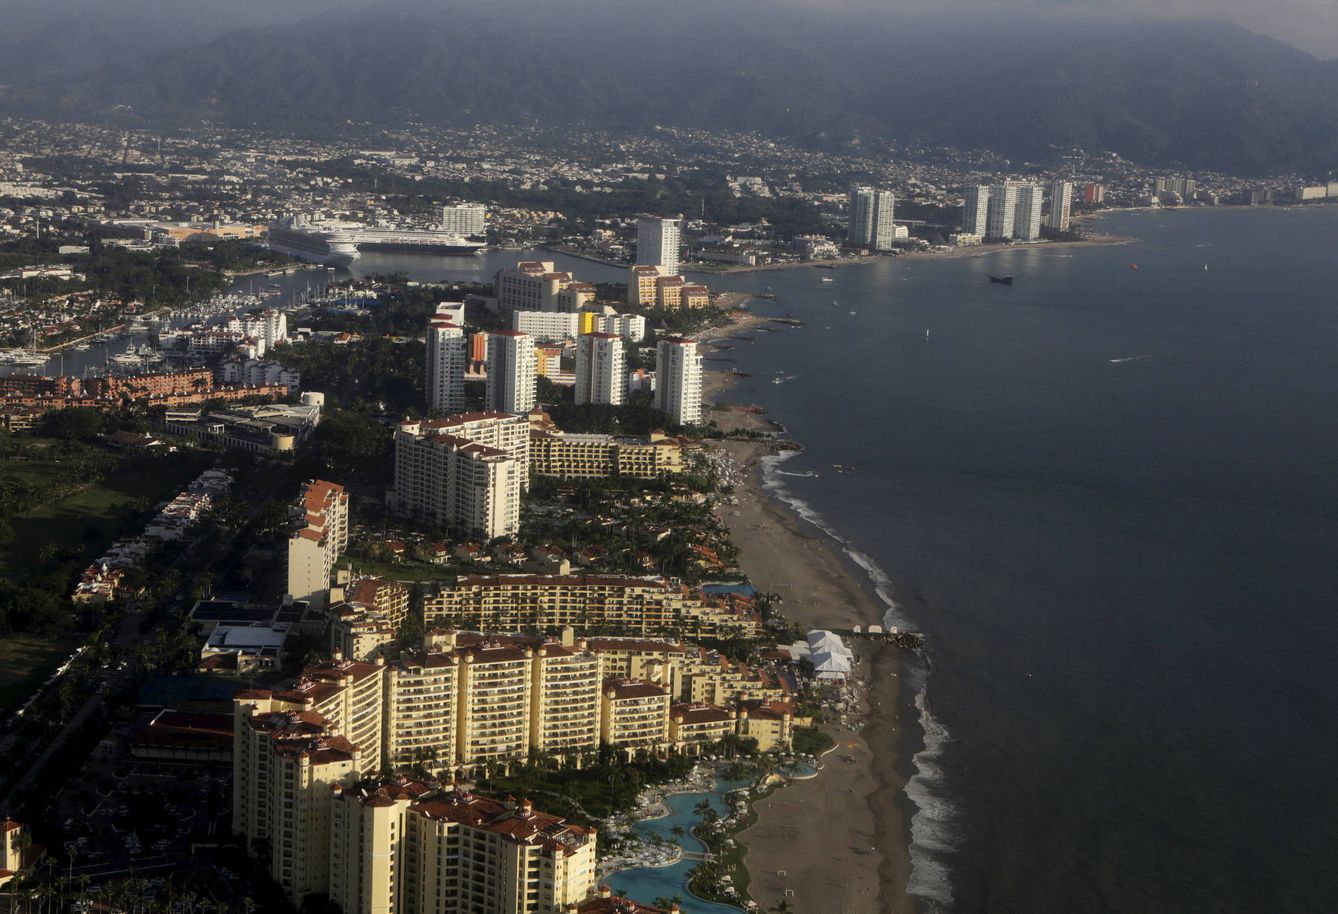 Vista aérea de Puerto Vallarta, la ciudad turística donde fue secuestrado José Alfredo, hijo del Chapo Guzmán. (REUTERS/Henry Romero)